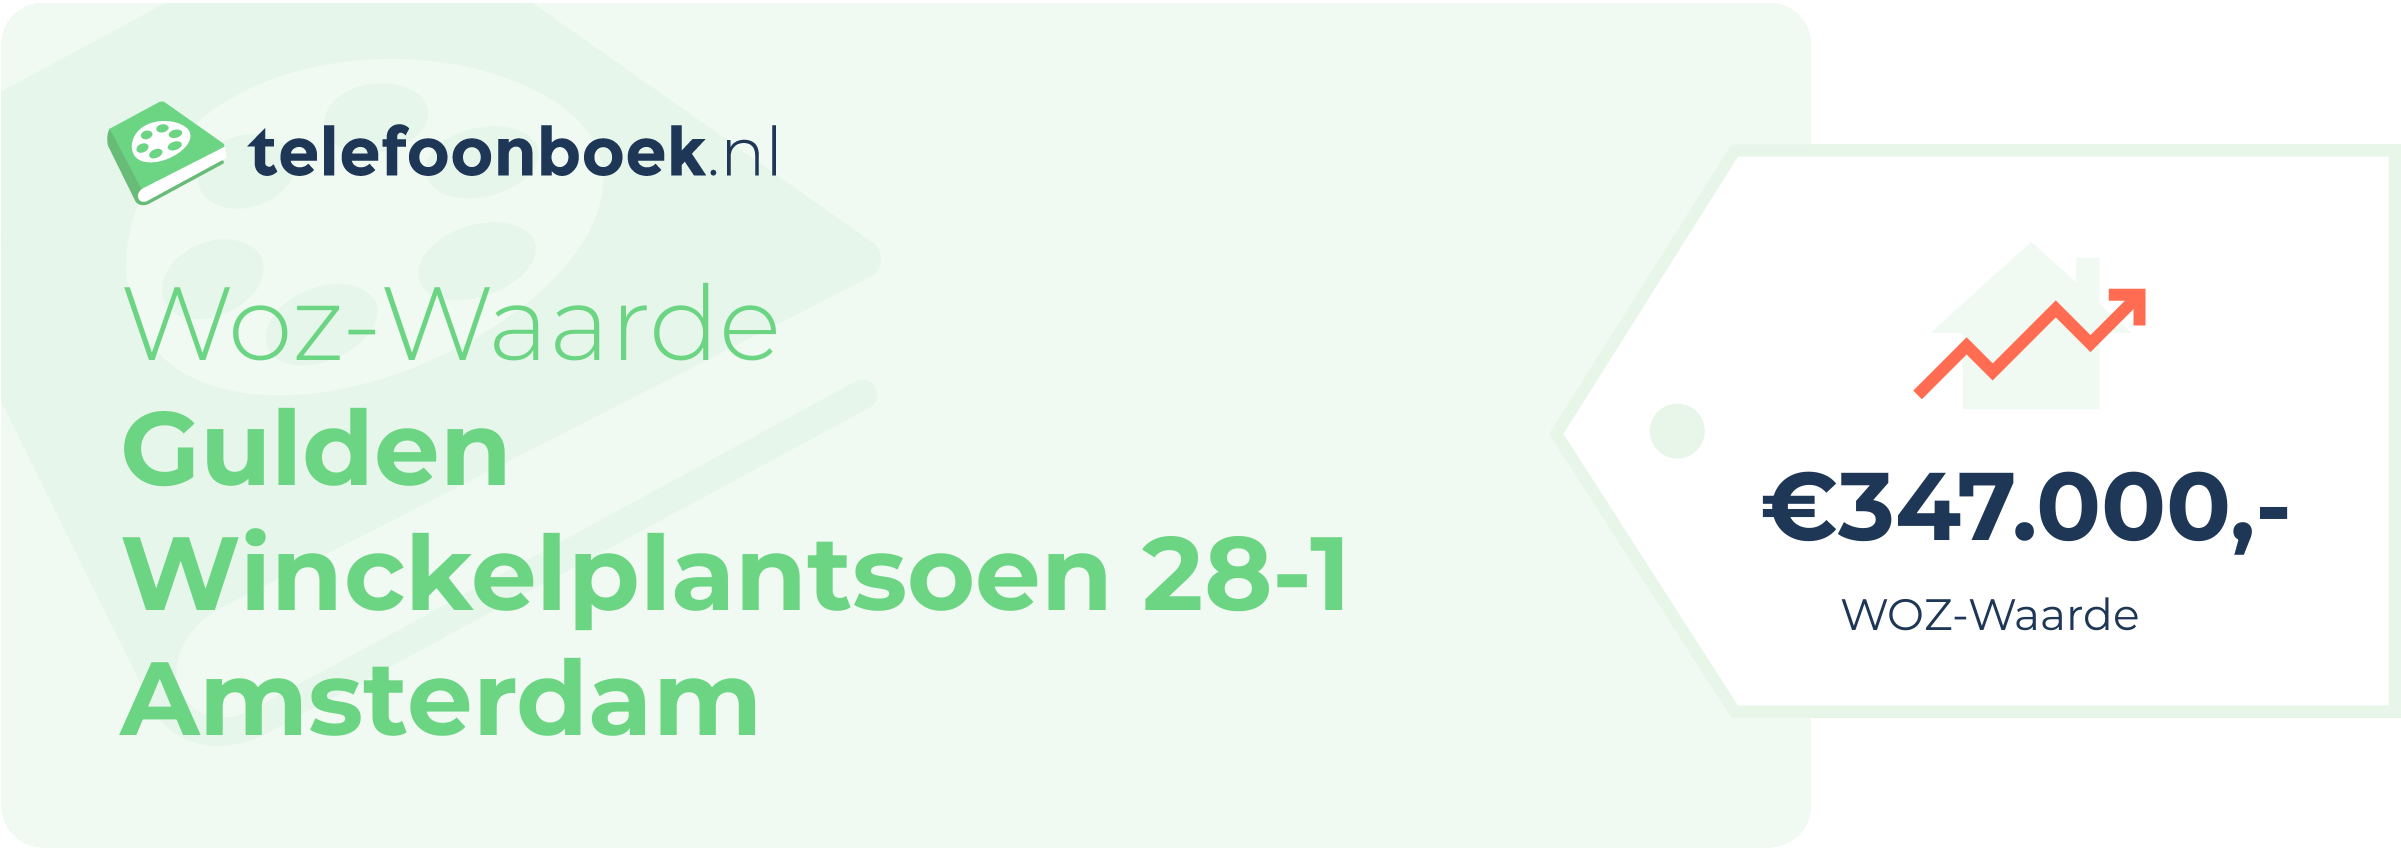 WOZ-waarde Gulden Winckelplantsoen 28-1 Amsterdam